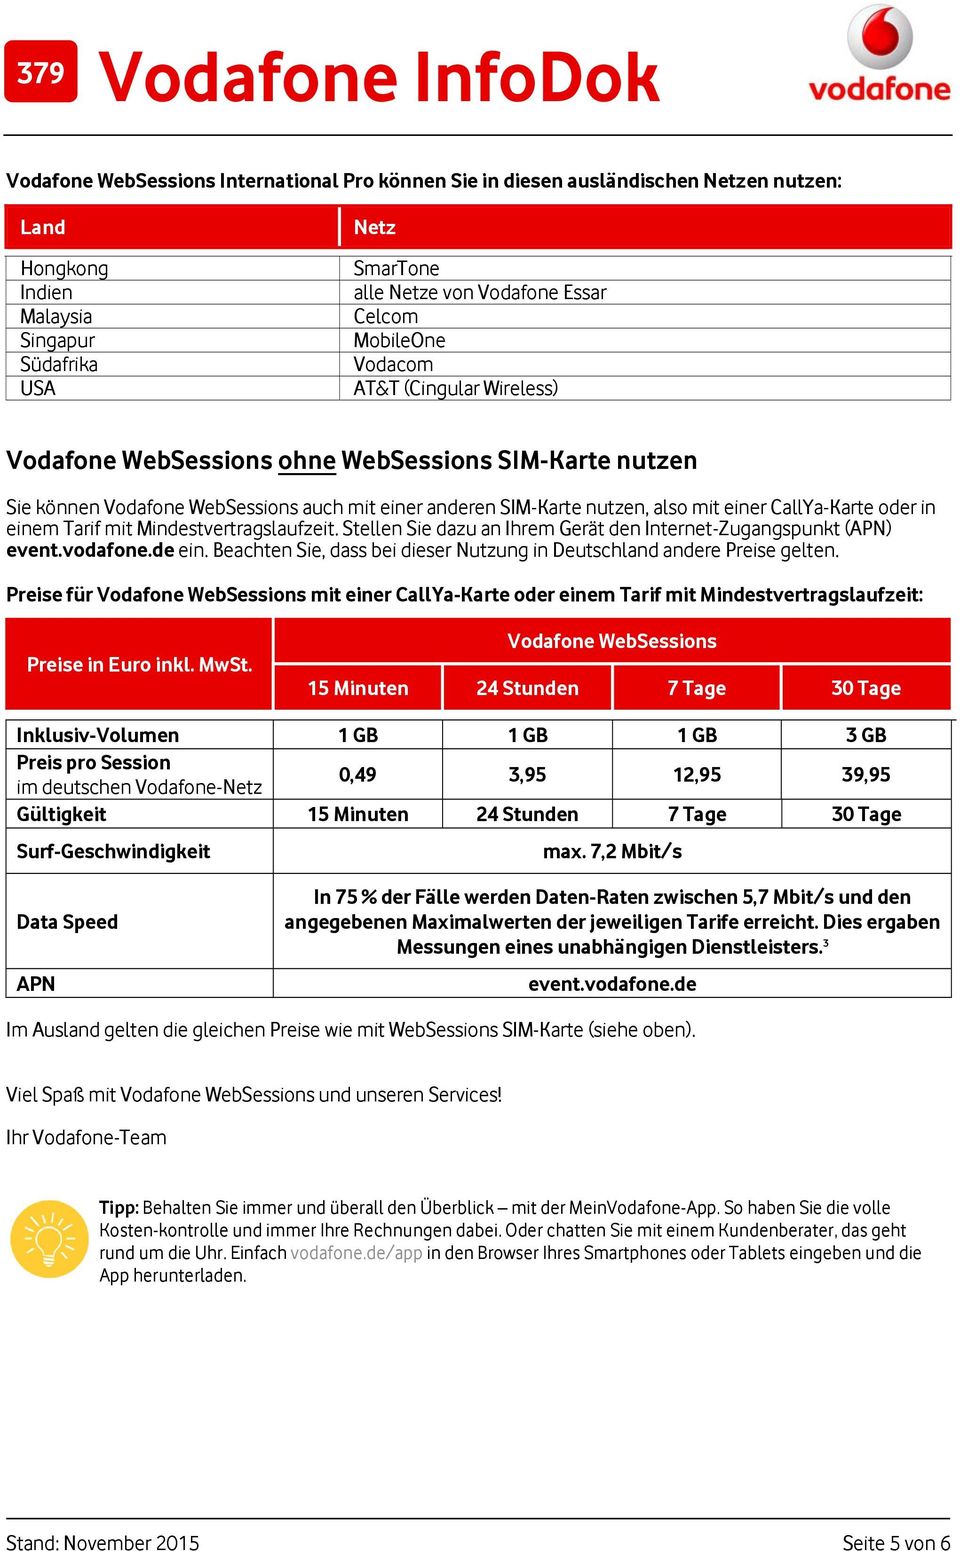 Stellen Sie dazu an Ihrem Gerät den Internet-Zugangspunkt (APN) event.vodafone.de ein. Beachten Sie, dass bei dieser Nutzung in Deutschland andere Preise gelten.